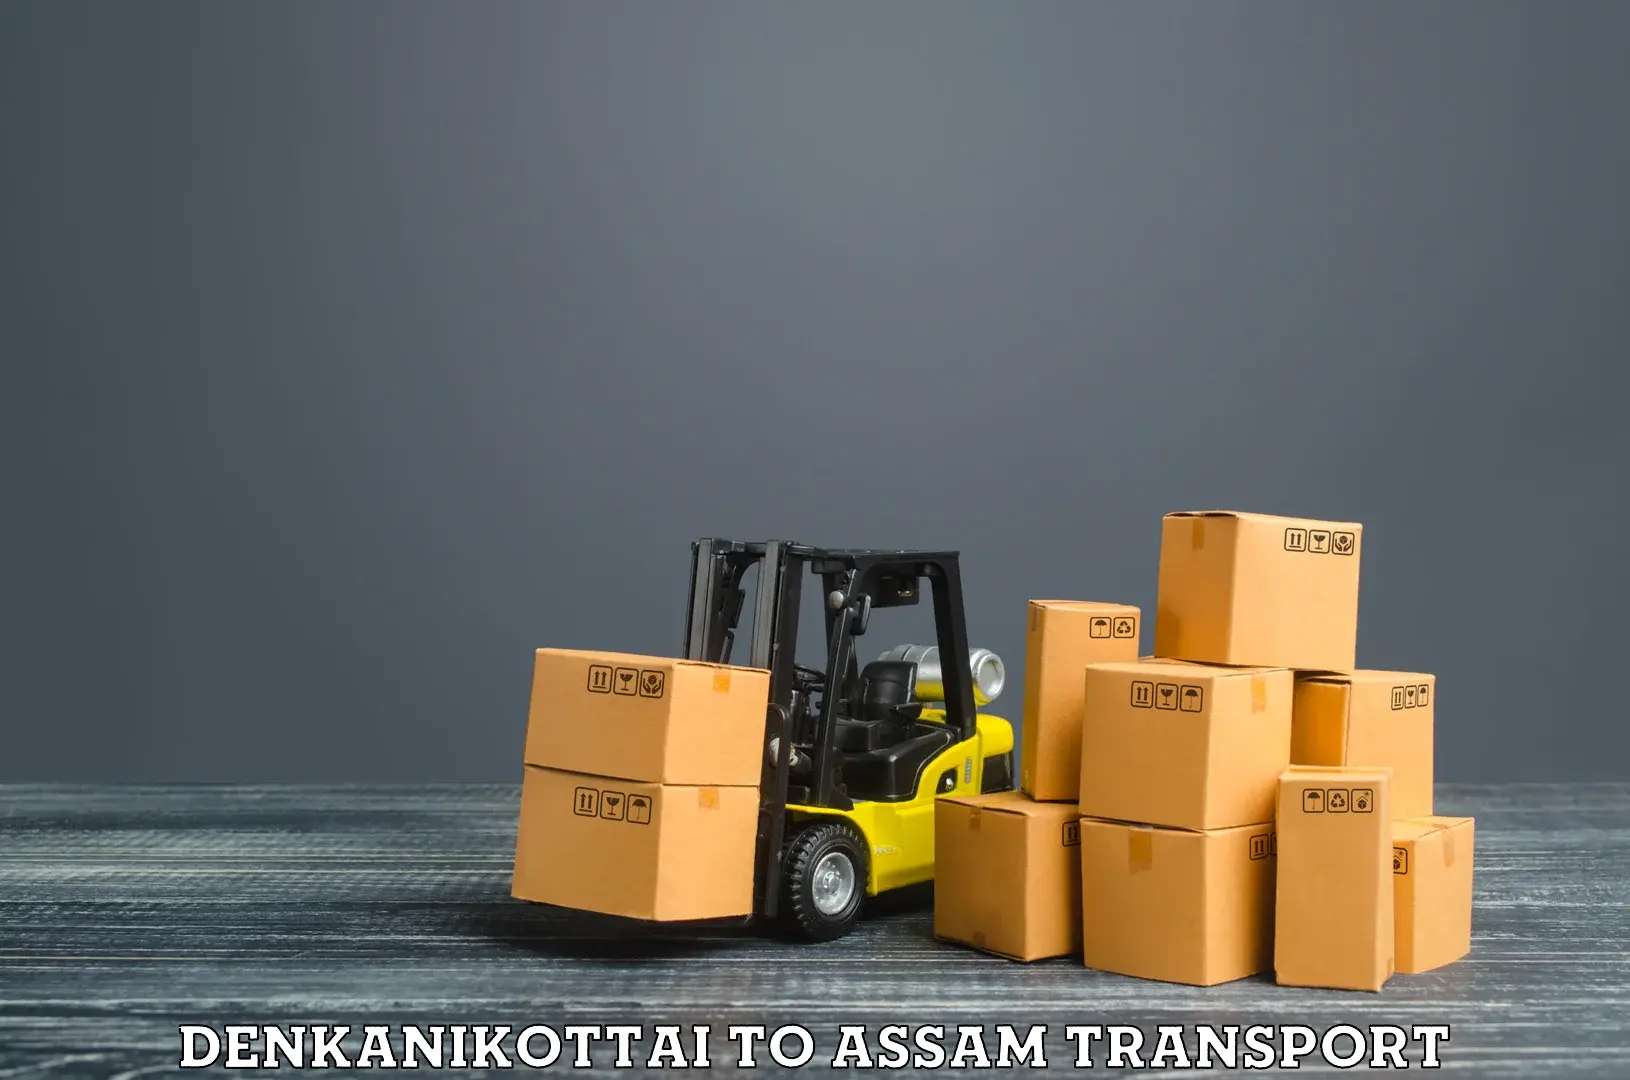 Road transport services Denkanikottai to Kampur